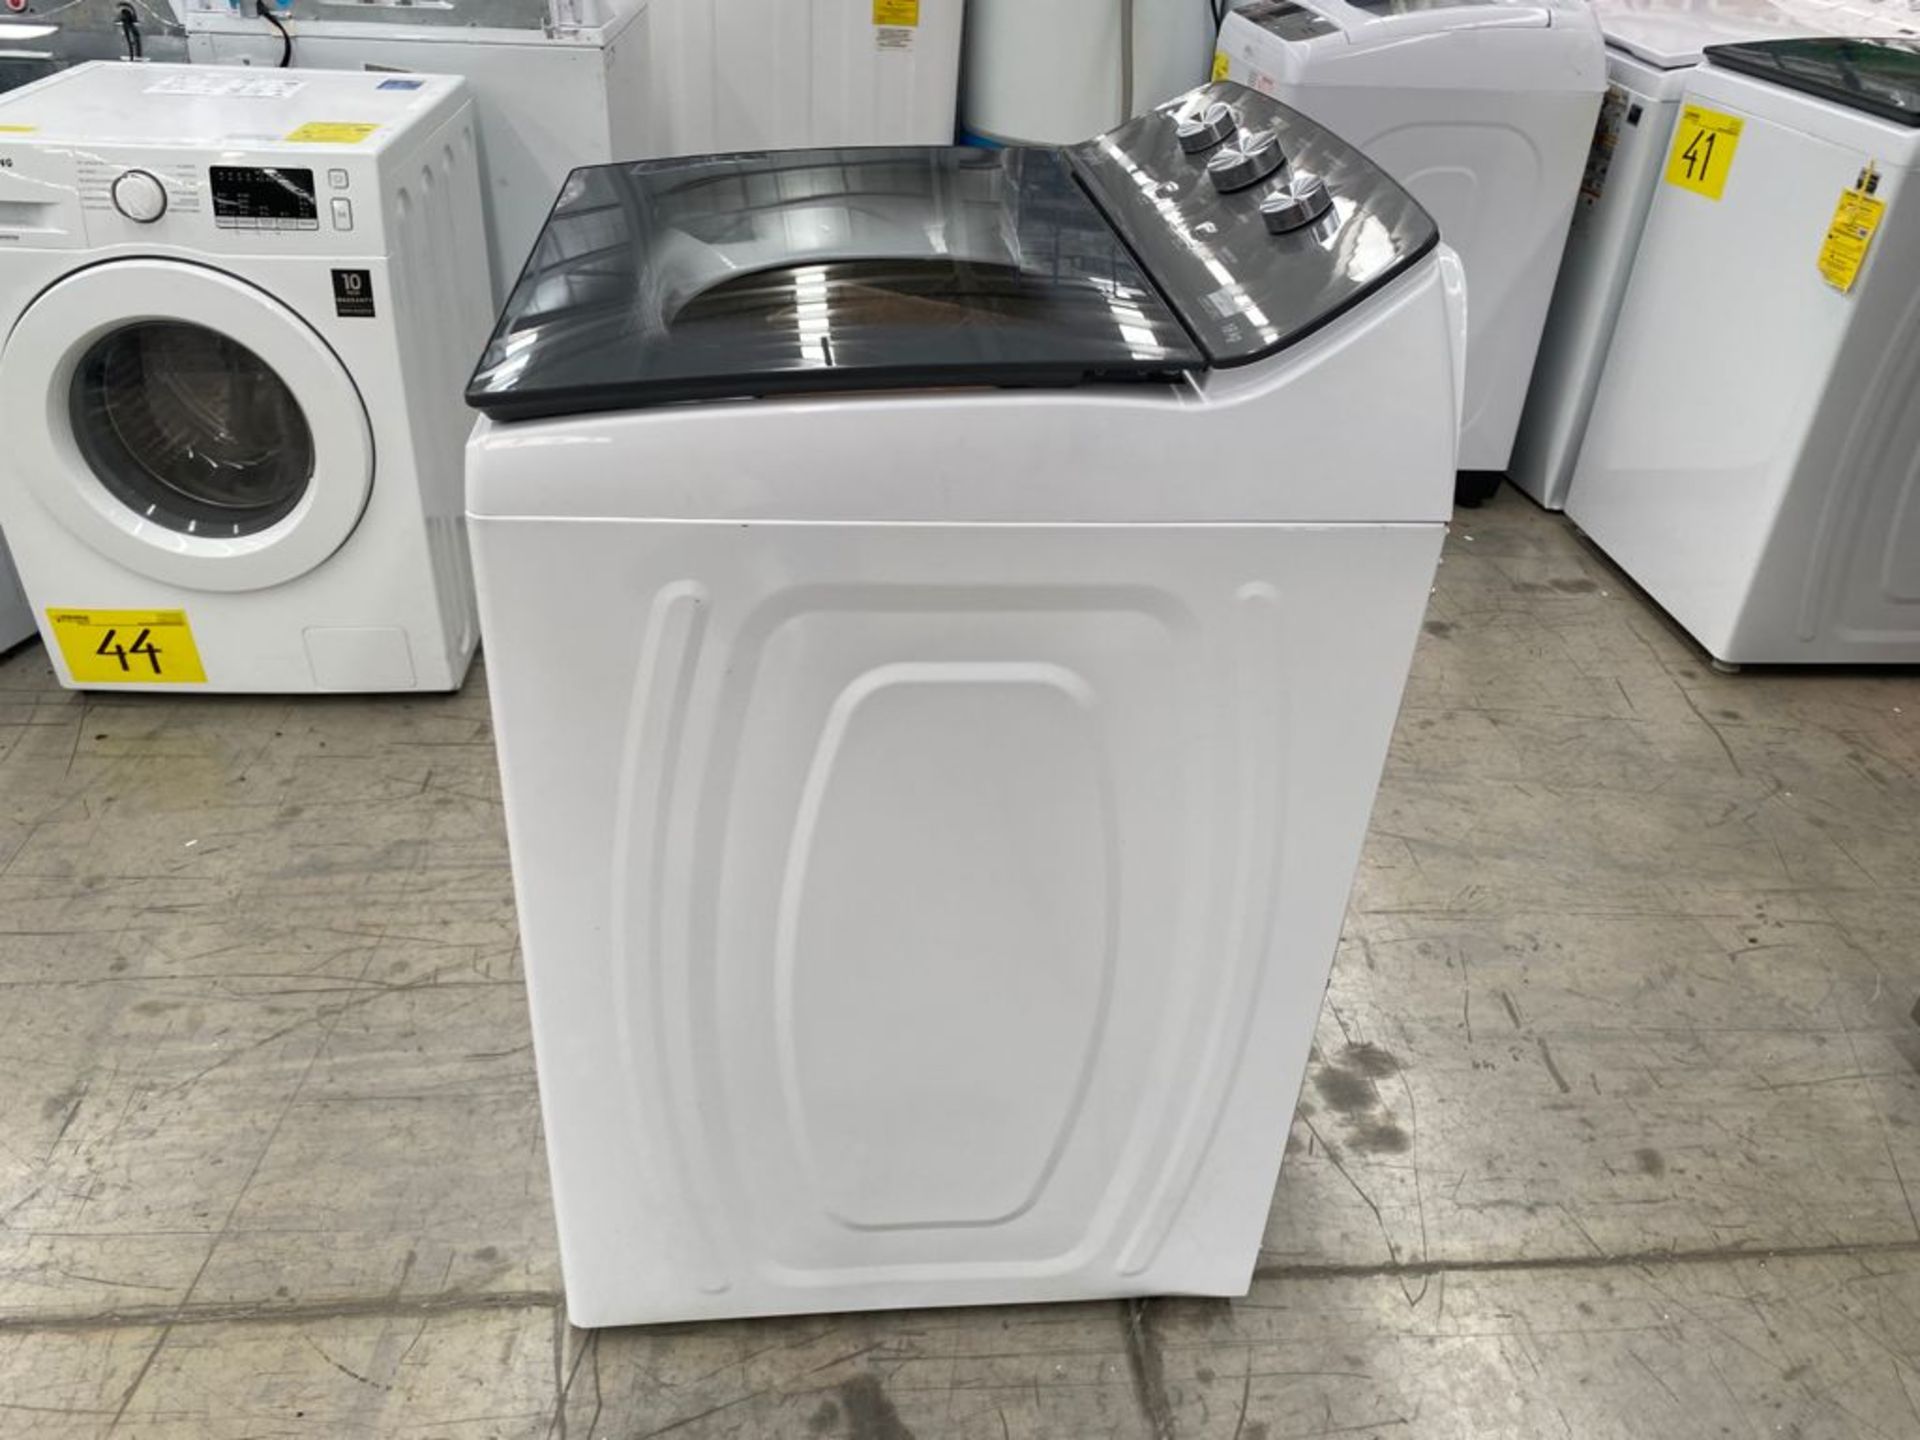 1 Lavadora marca Whirlpool de 18 kilos color blanco modelo 8MWTW1823WJM0 - Image 8 of 20